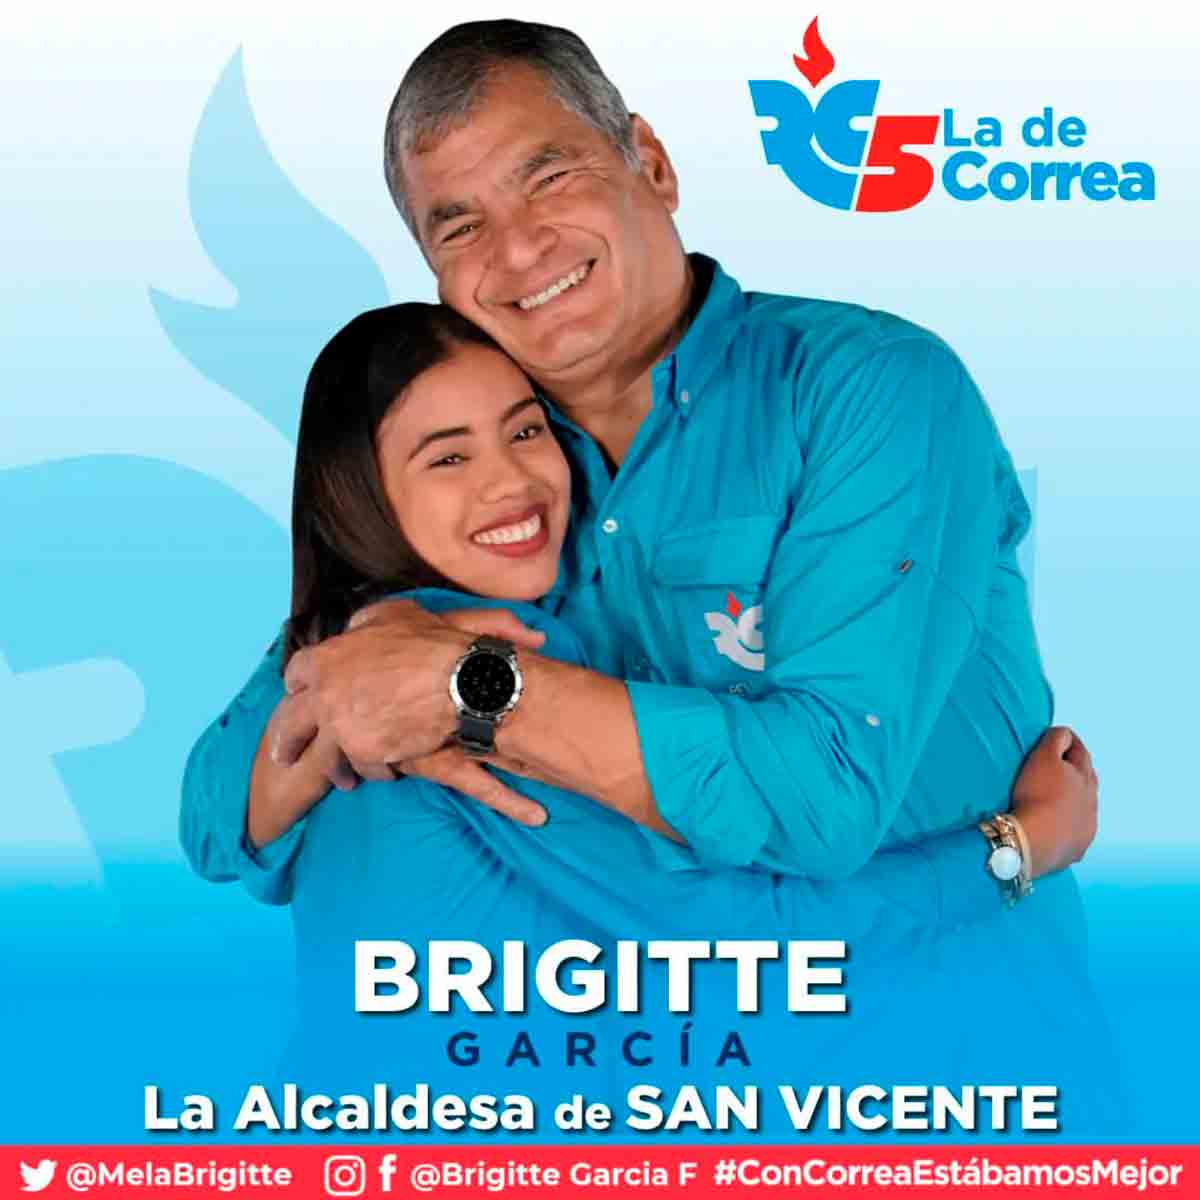 Brigitte García var medlem i det tidigare presidentens Rafael Correas Revolutionära Civilparti